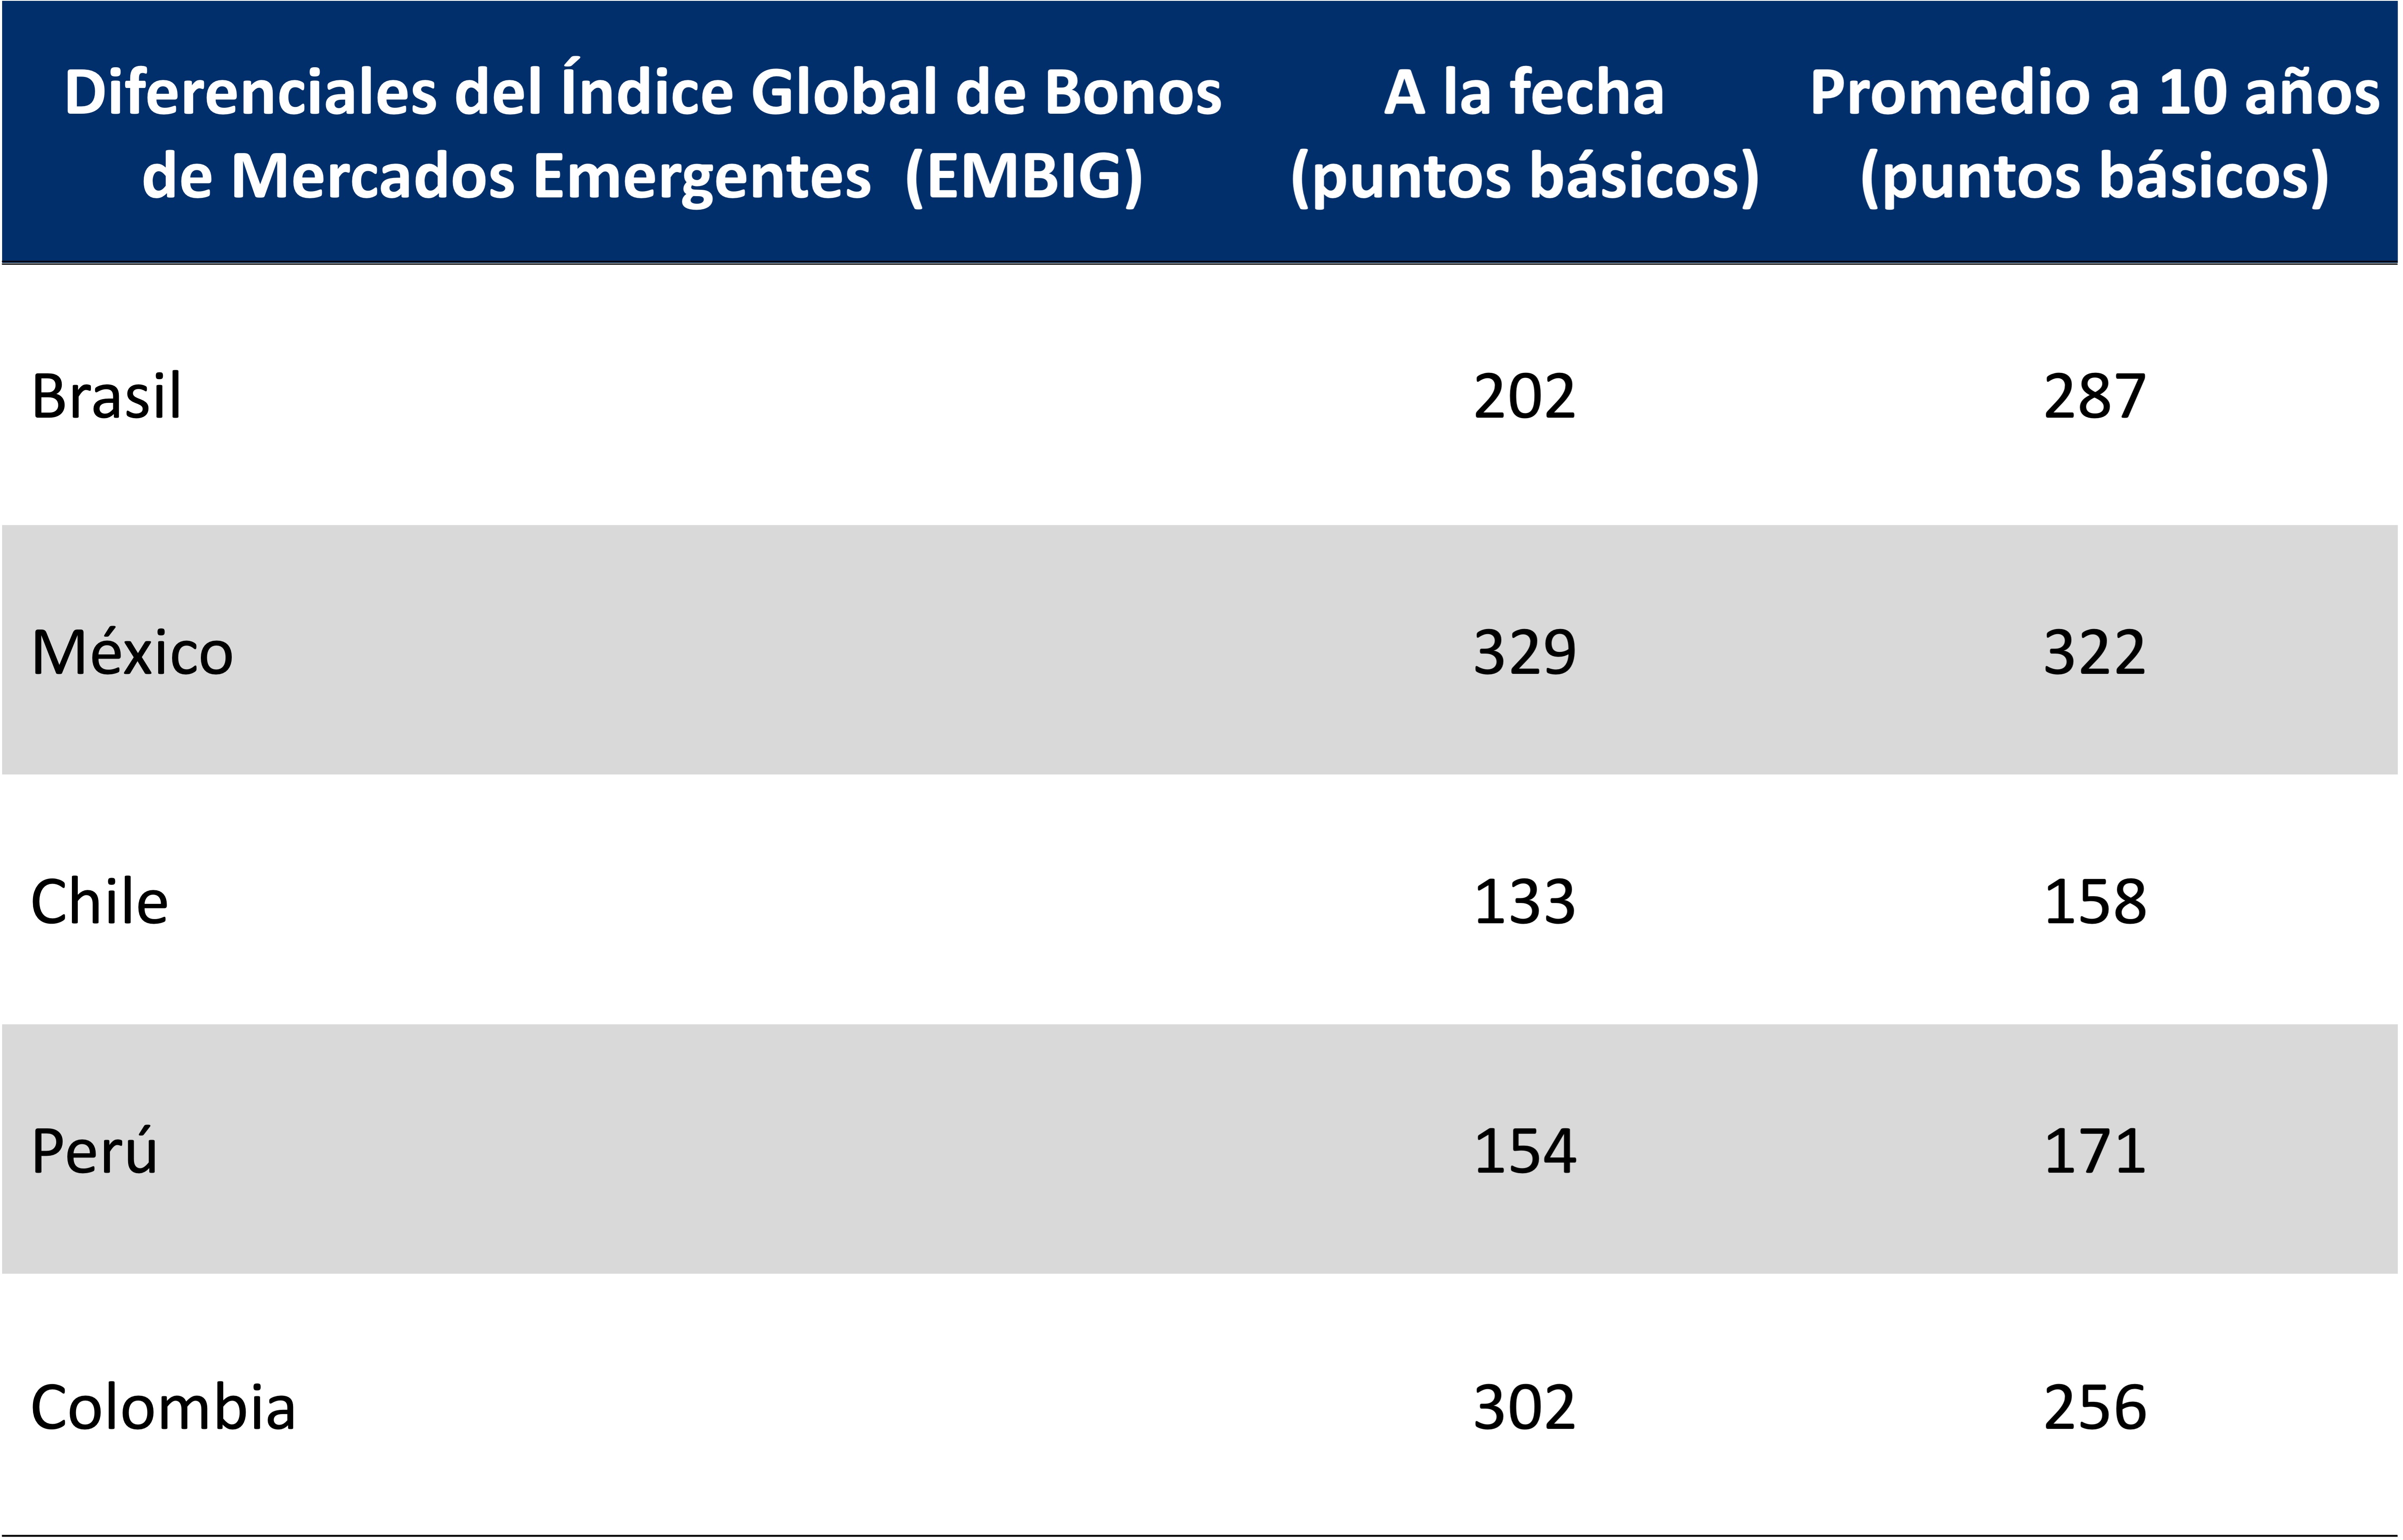 Tabla muestra los diferenciales a la fecha y promedio a 10 años del Índice Global de Bonos de Mercados Emergentes (en puntos básicos) de México, Brasil, Colombia, Chile y Perú.